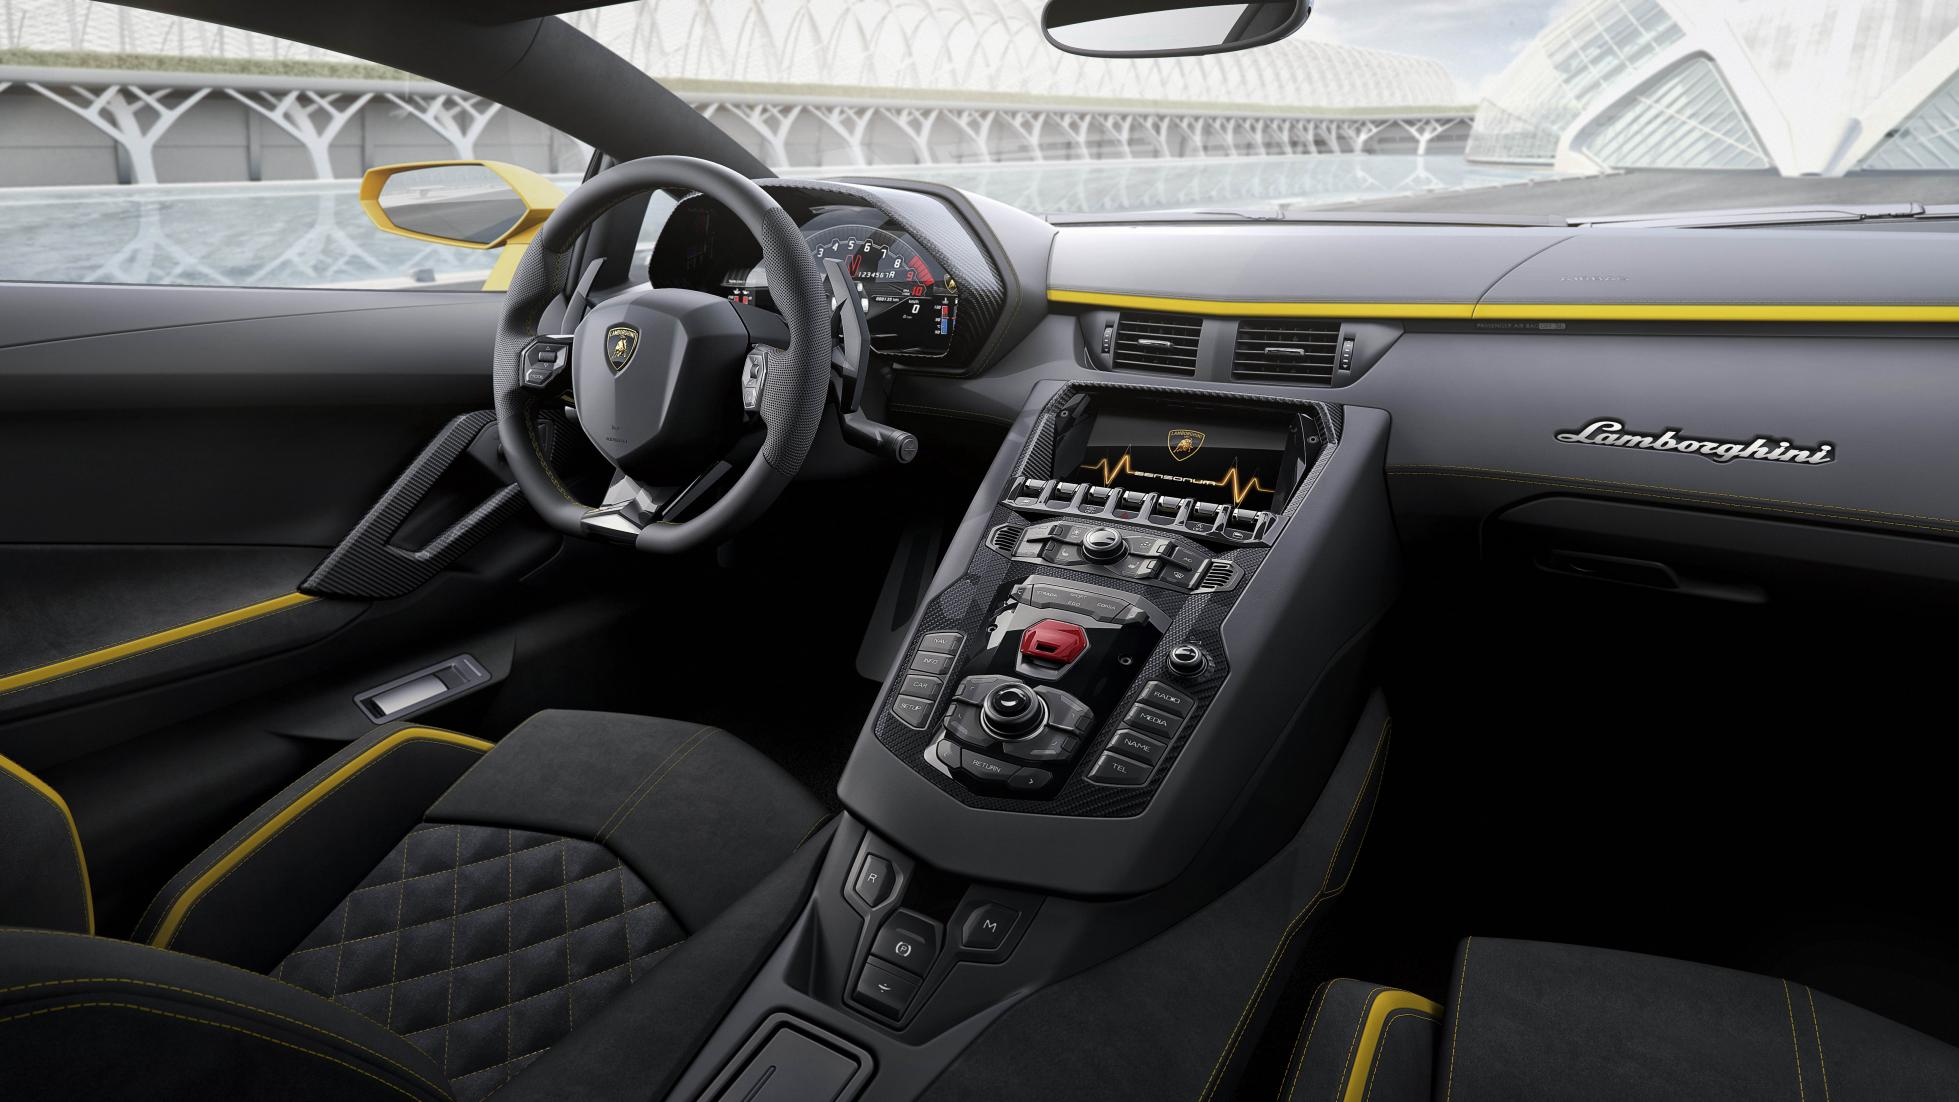 Lamborghini Aventador S Coupe inside the cabin